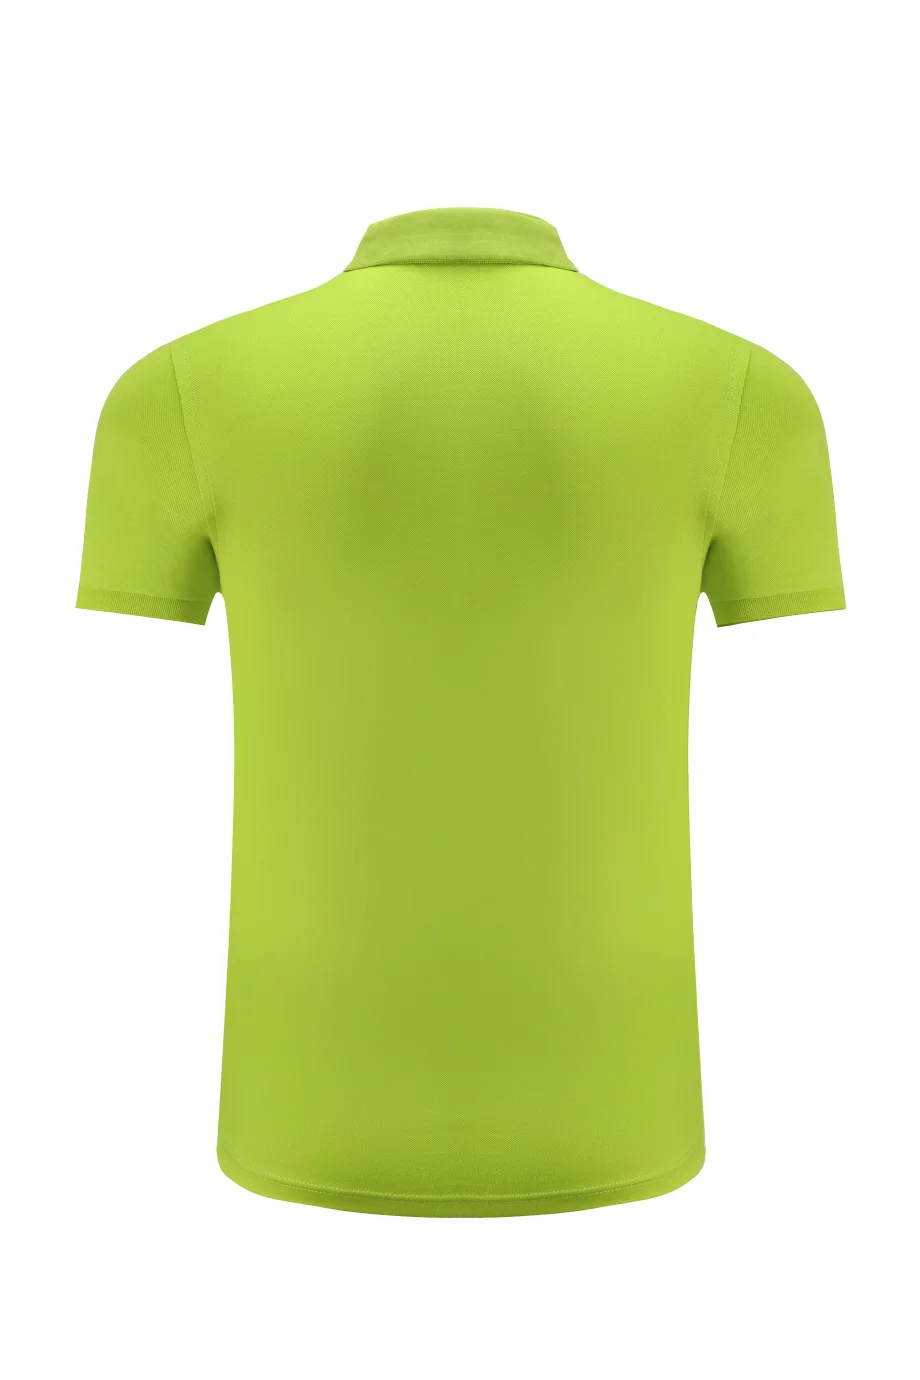 Брендовая футболка для гольфа для мужчин s Одежда Для Гольфа Шорты Летние тенниска с рукавами спортивные мужские теннисные футболки поло для гольфа рубашки shirts